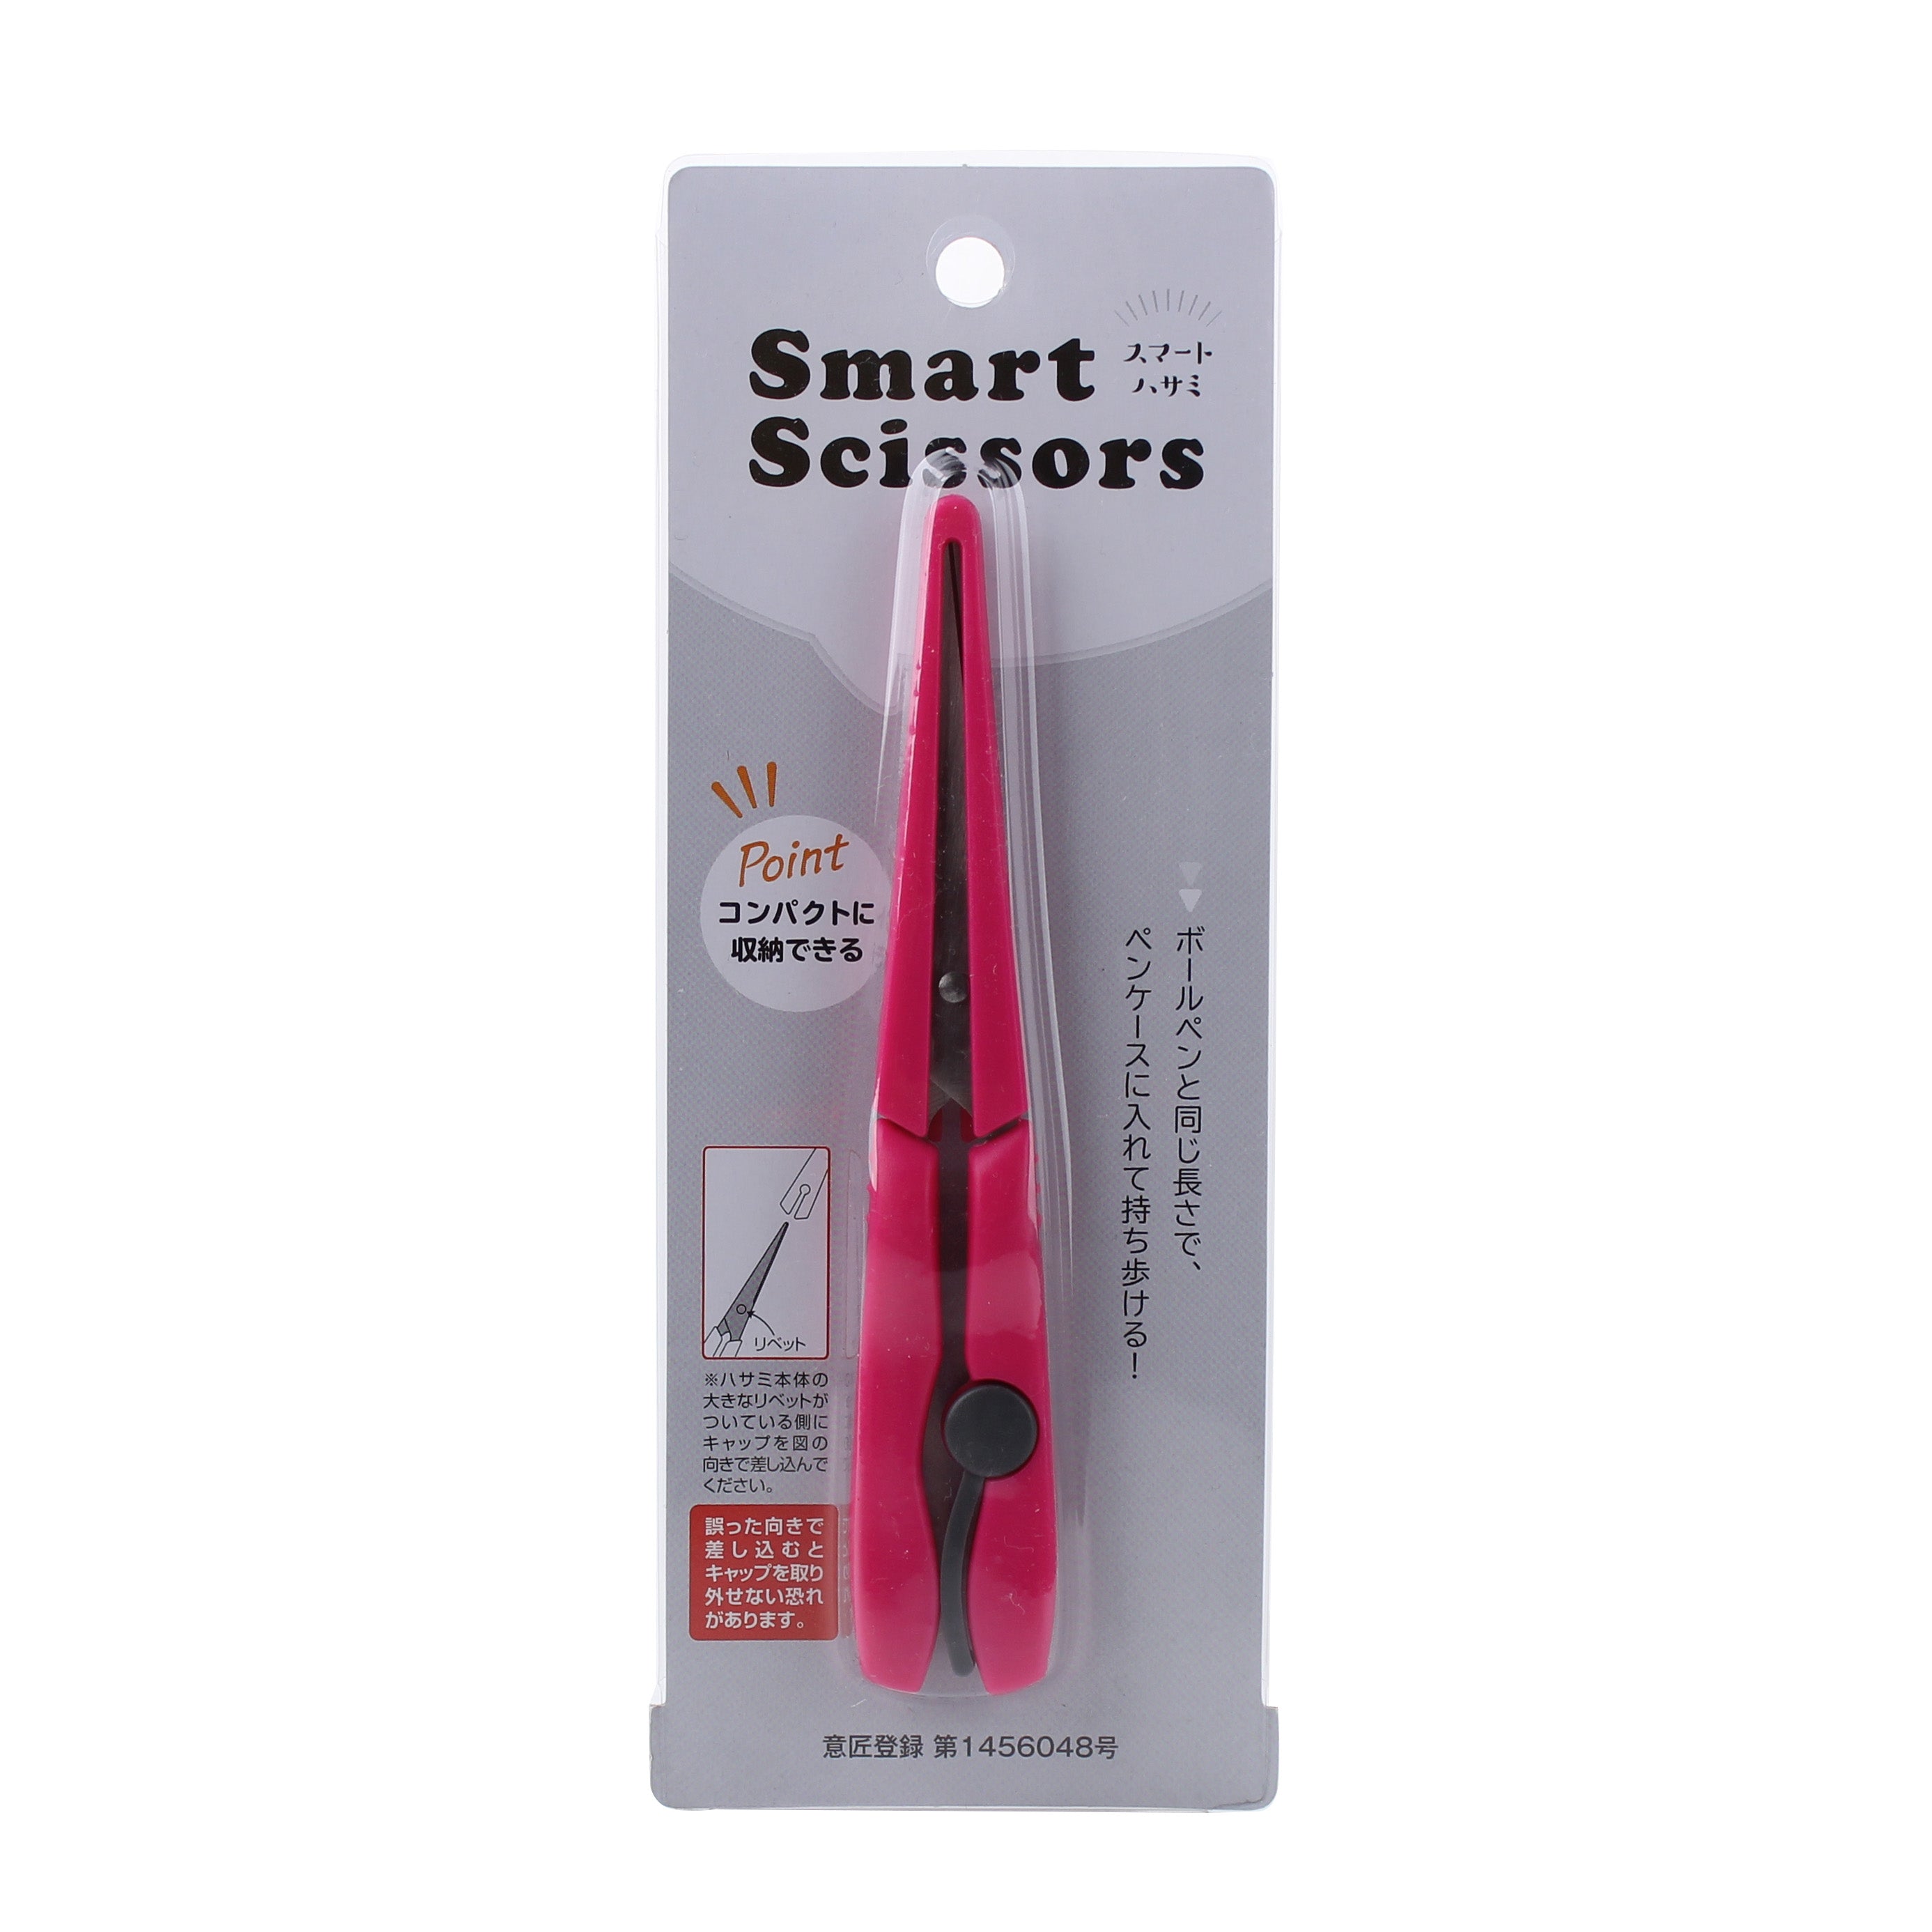 Smart Scissors